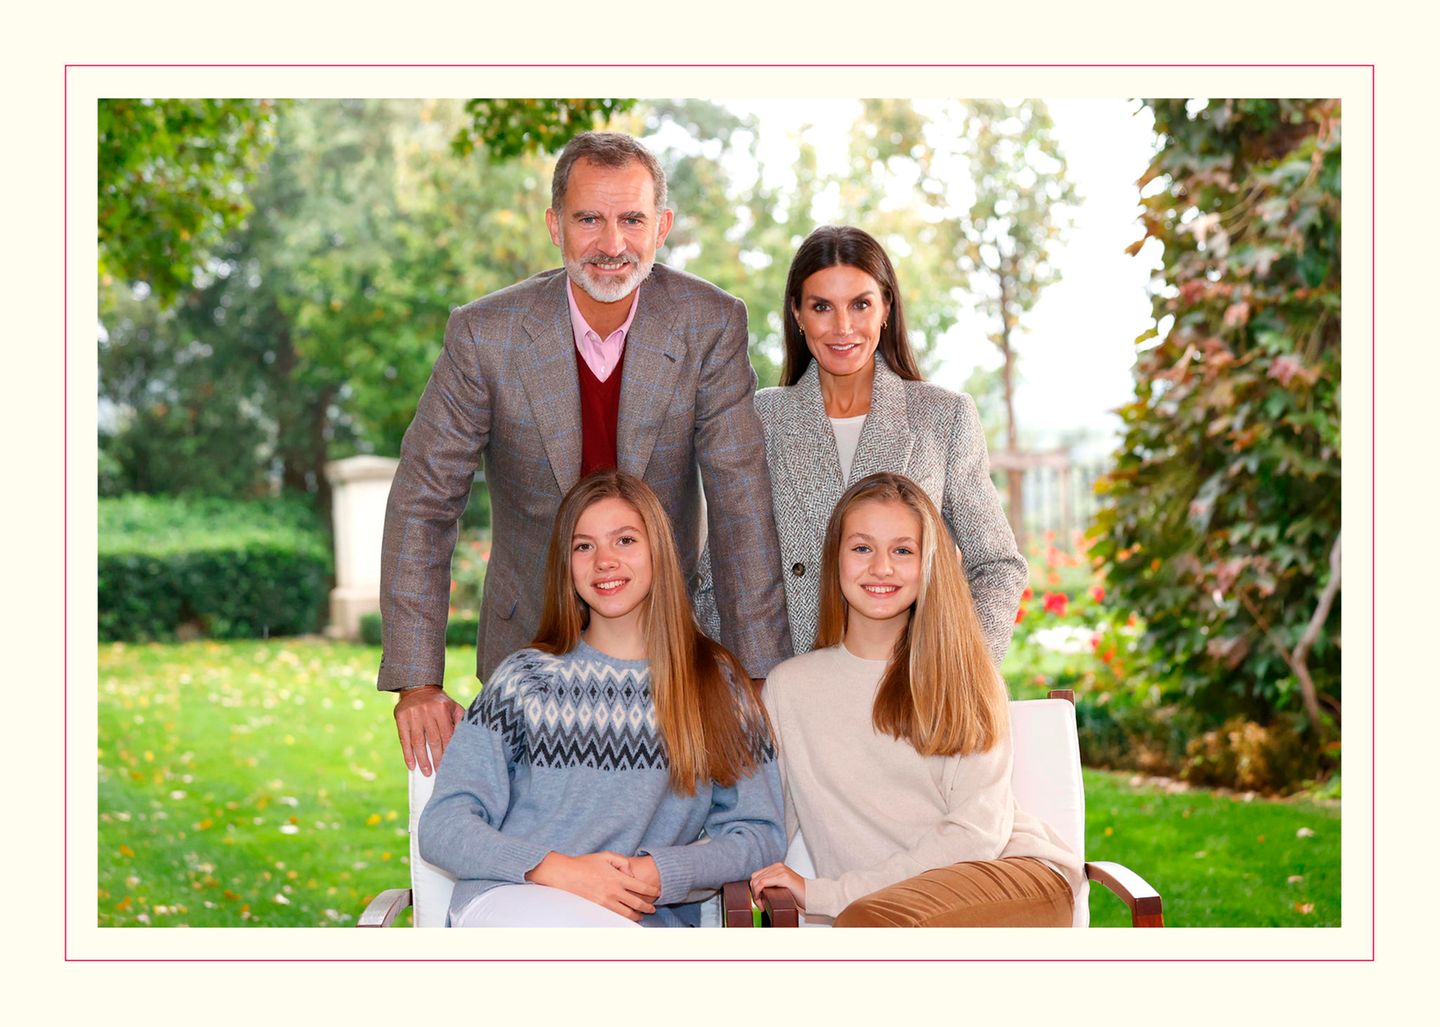 Für die Weihnachtskarte 2021 hat sich die spanische Königsfamilie klassisch elegant in Schale geworfen. Die beiden Töchter von Königin Letizia und König Felipe zeigen sich in weihnachtlichen Strickpullovern. Prinzessin Leonor greift zu einem typischen Norwegerpullover, Prinzessin Sofia wählt – passend zu der goldblonden Haarpracht – ein schlichtes Beige.